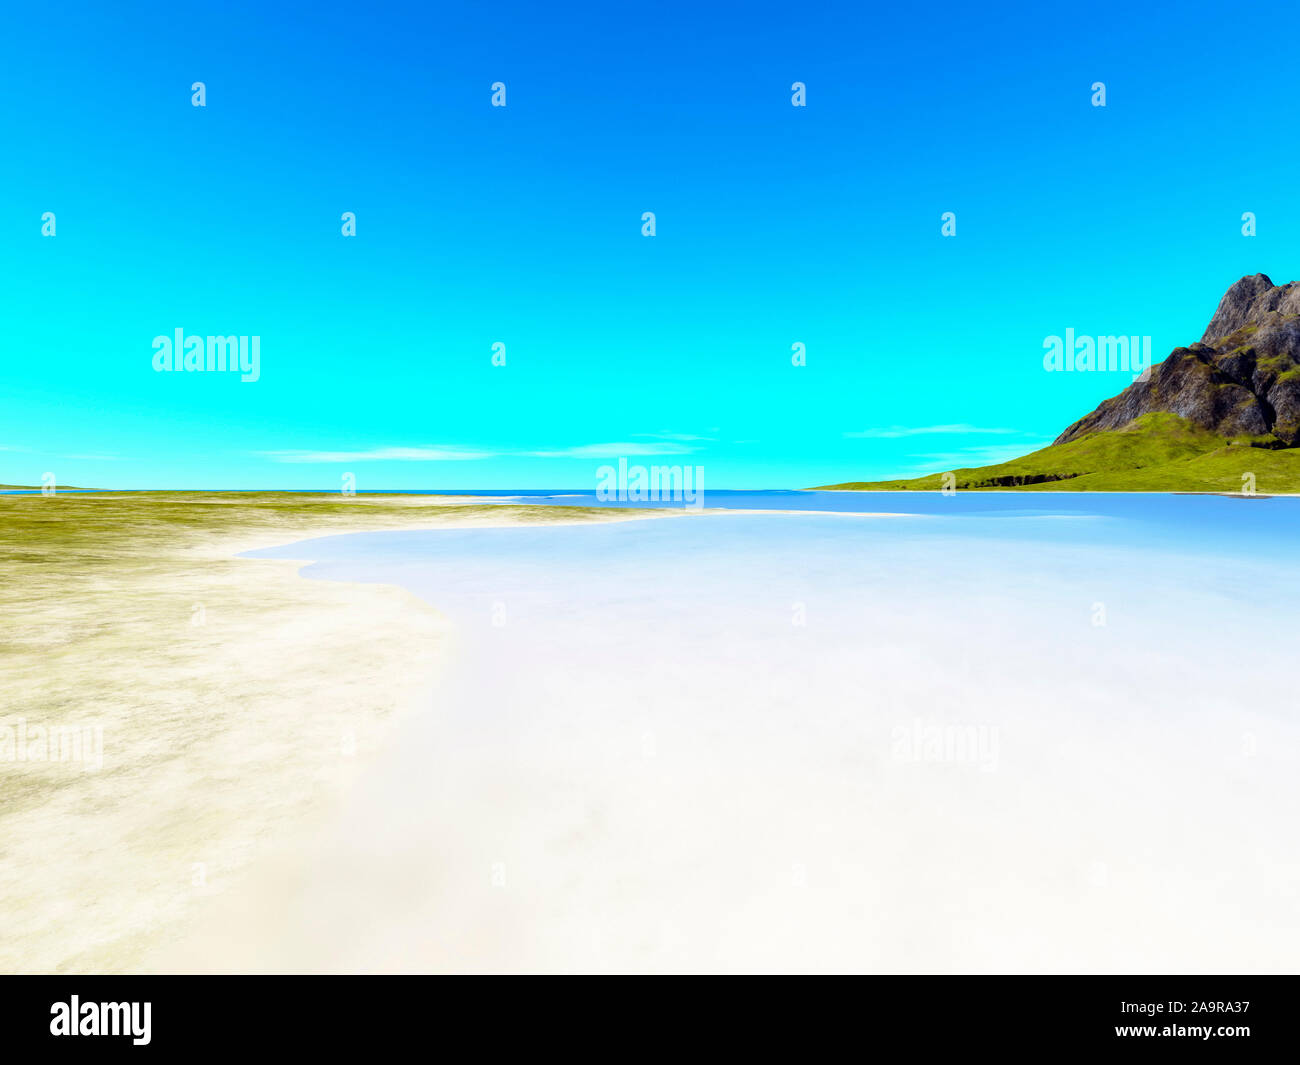 Eine wunderschoene Fantasy-Landschaft, bestehend aus einem schoenen weissen Sandstrand am Ozean Stock Photo